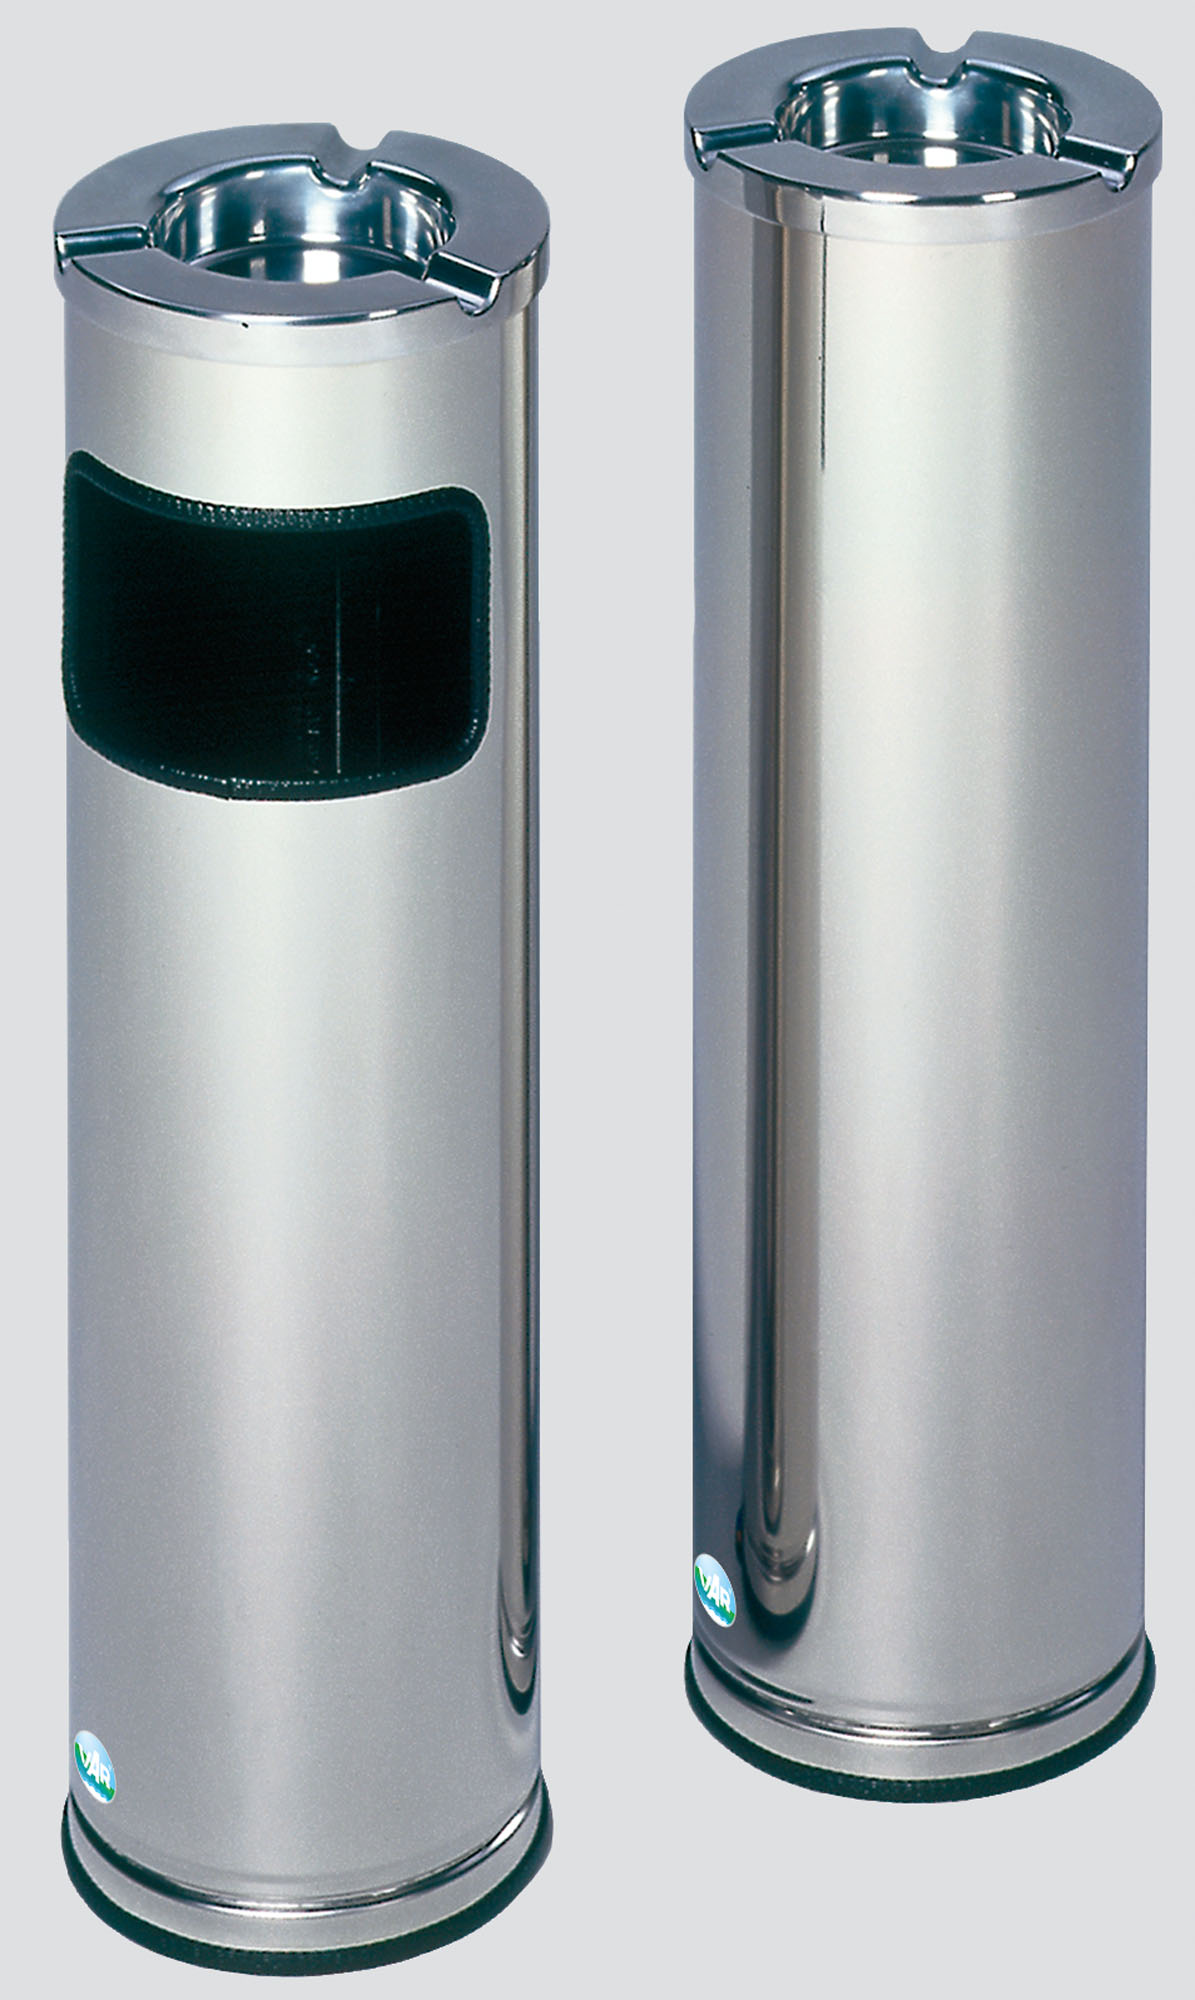 Robuster Kombiascher mit poliertem Aschereinsatz | 11,6 Liter, HxBxT 66x20x20cm | Edelstahl | Poliert